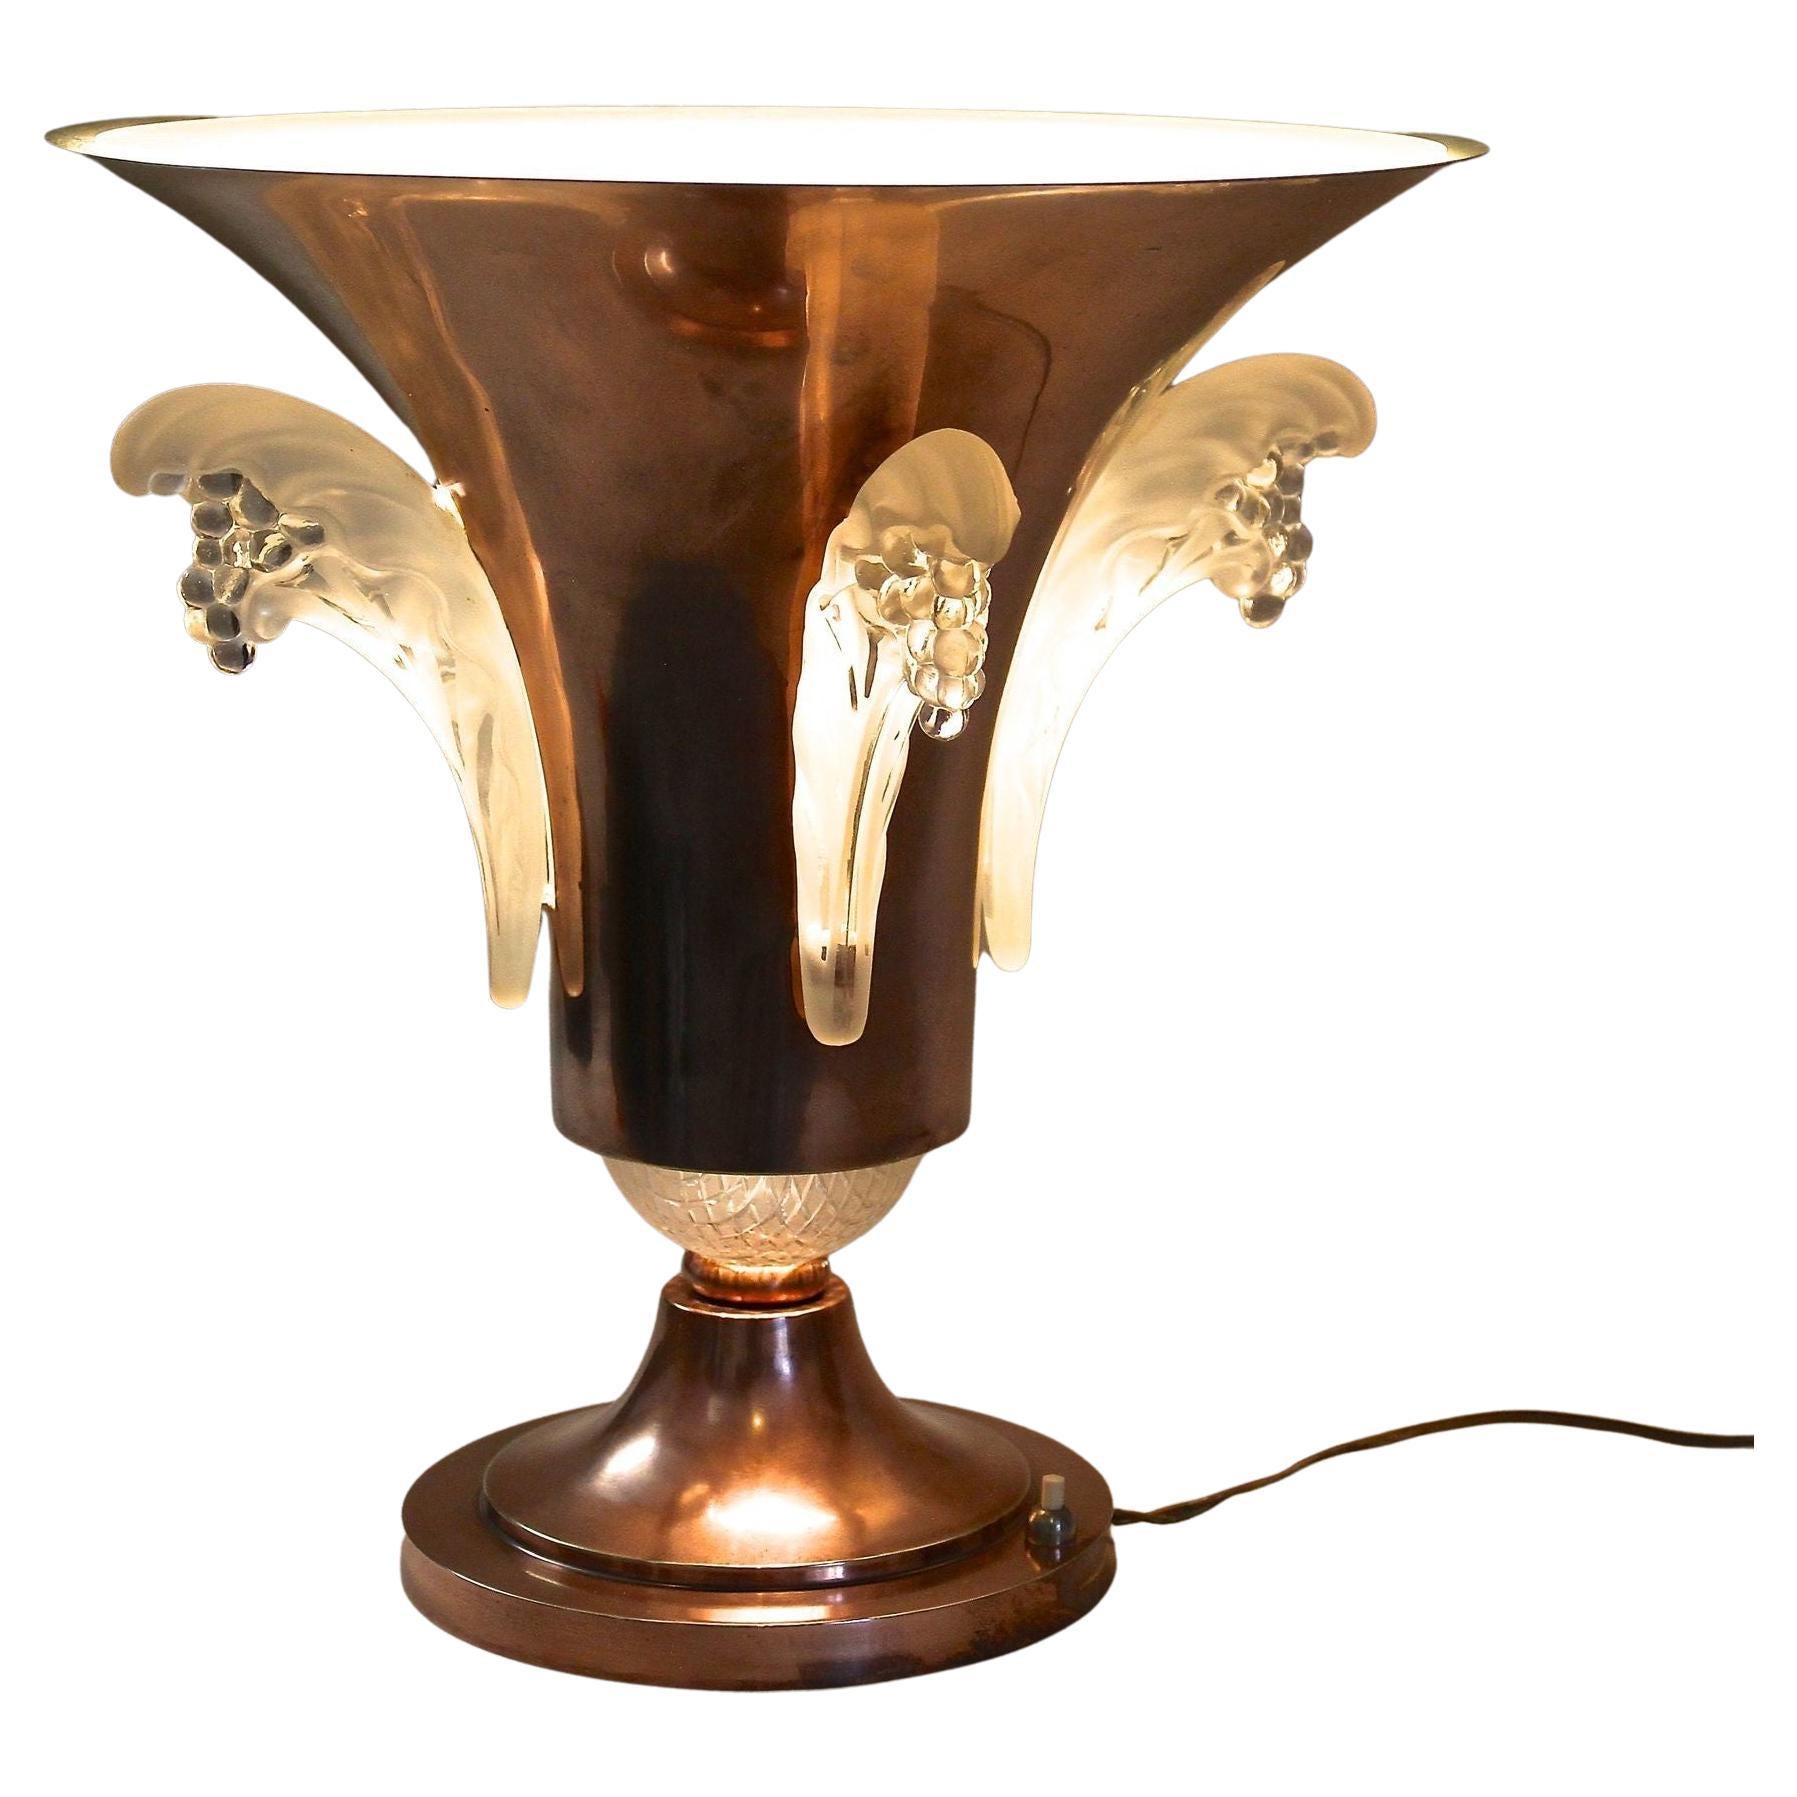 Art-Déco-Tischlampe aus Kupfer mit Lalique-Glaselementen, Frankreich, um 1925